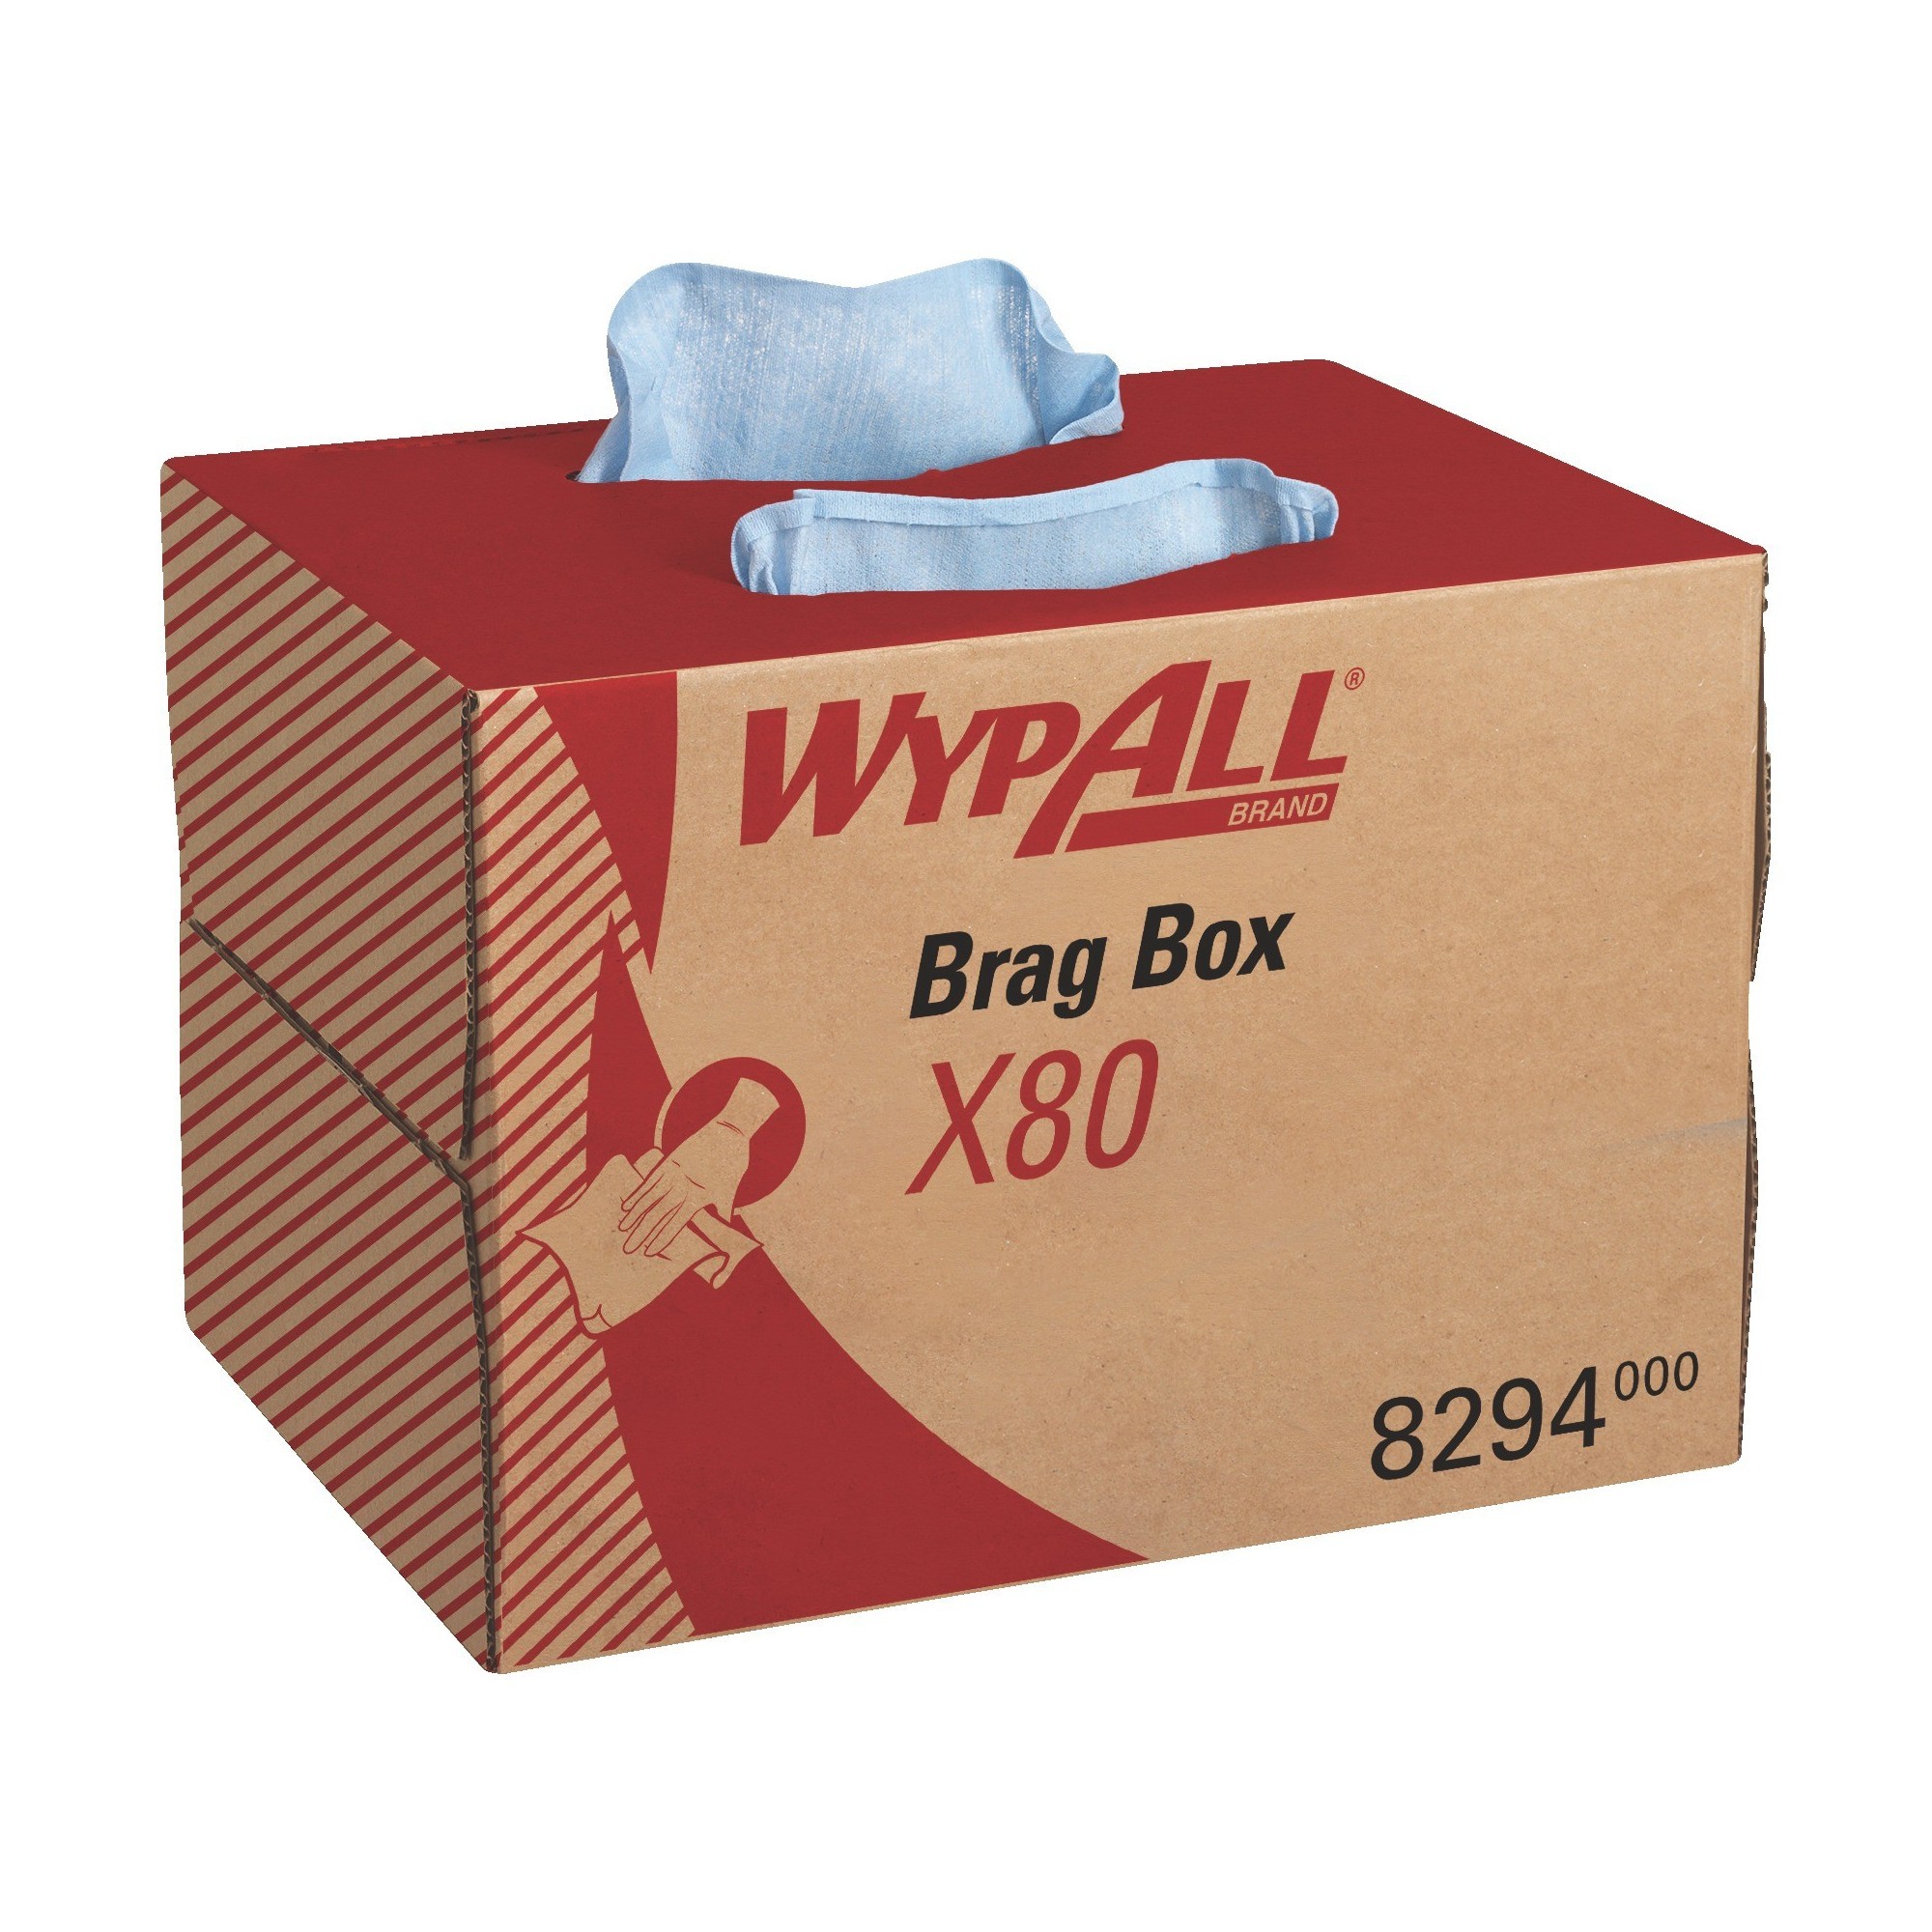 WYPALL X80 8294 - KIMBERLY-CLARK